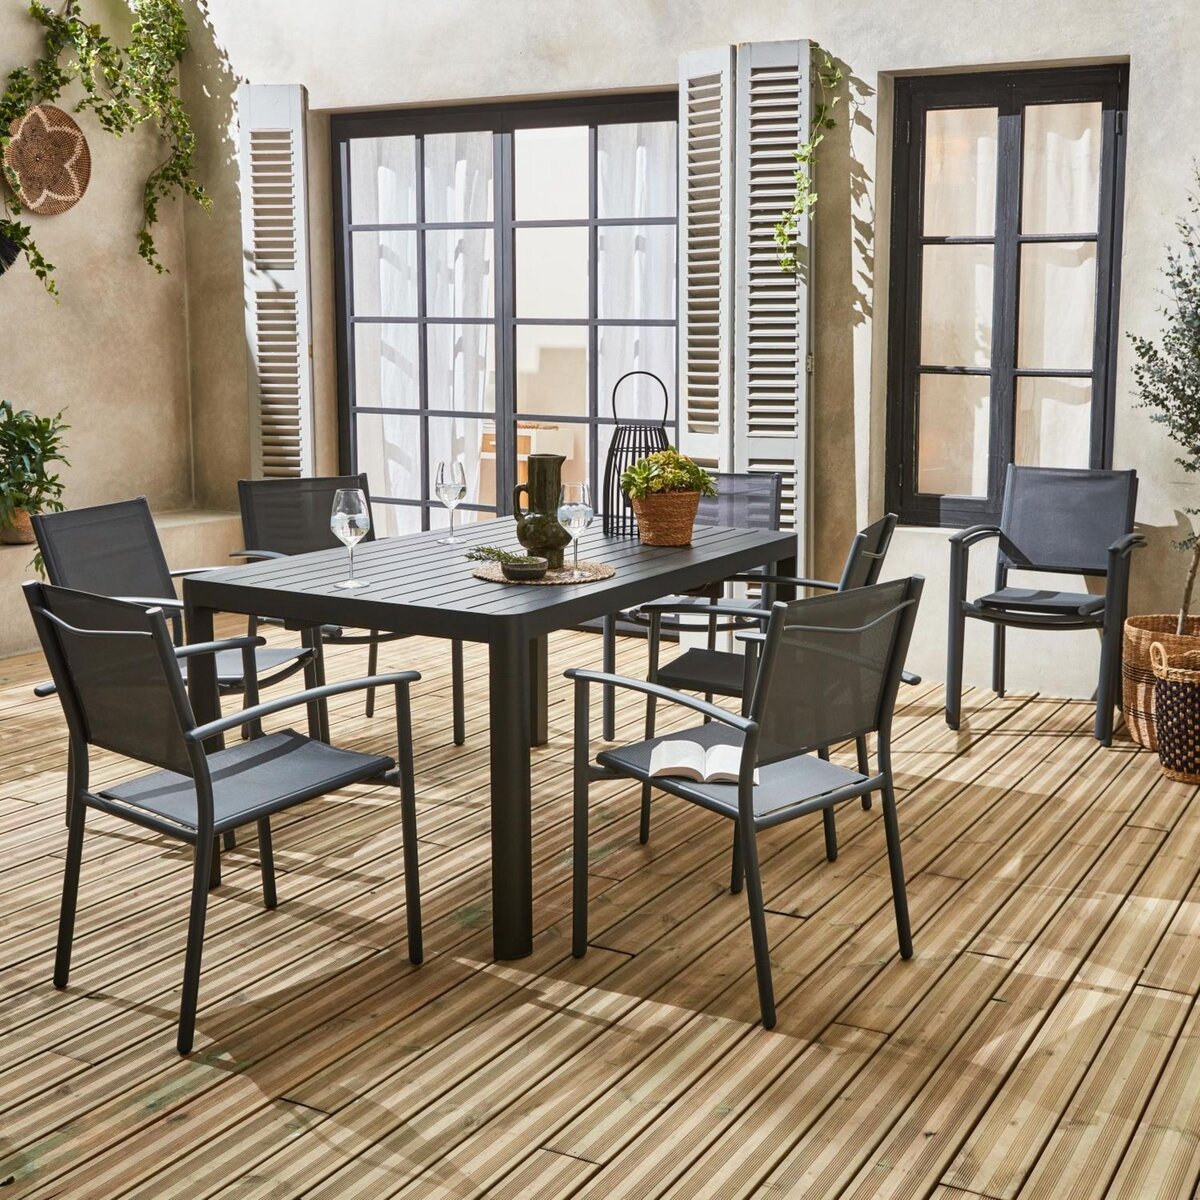 Table de jardin extensible avec rallonge et 8 chaises empilables